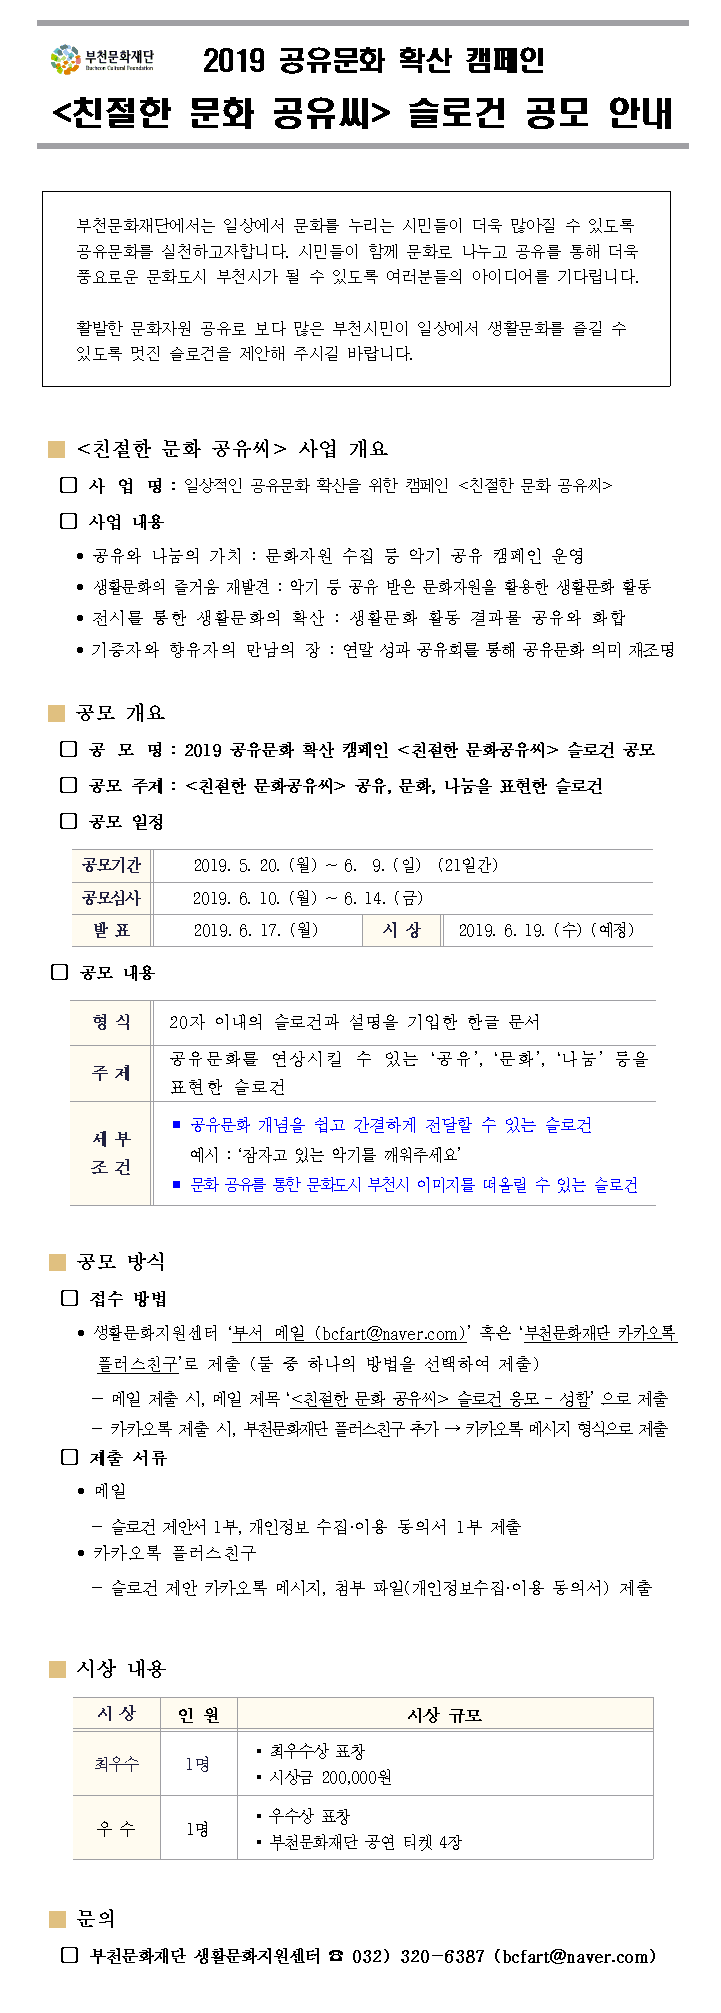 공유문화 확산캠페인 <친절한문화공유씨> 슬로건 공모전 (~ 6. 9)